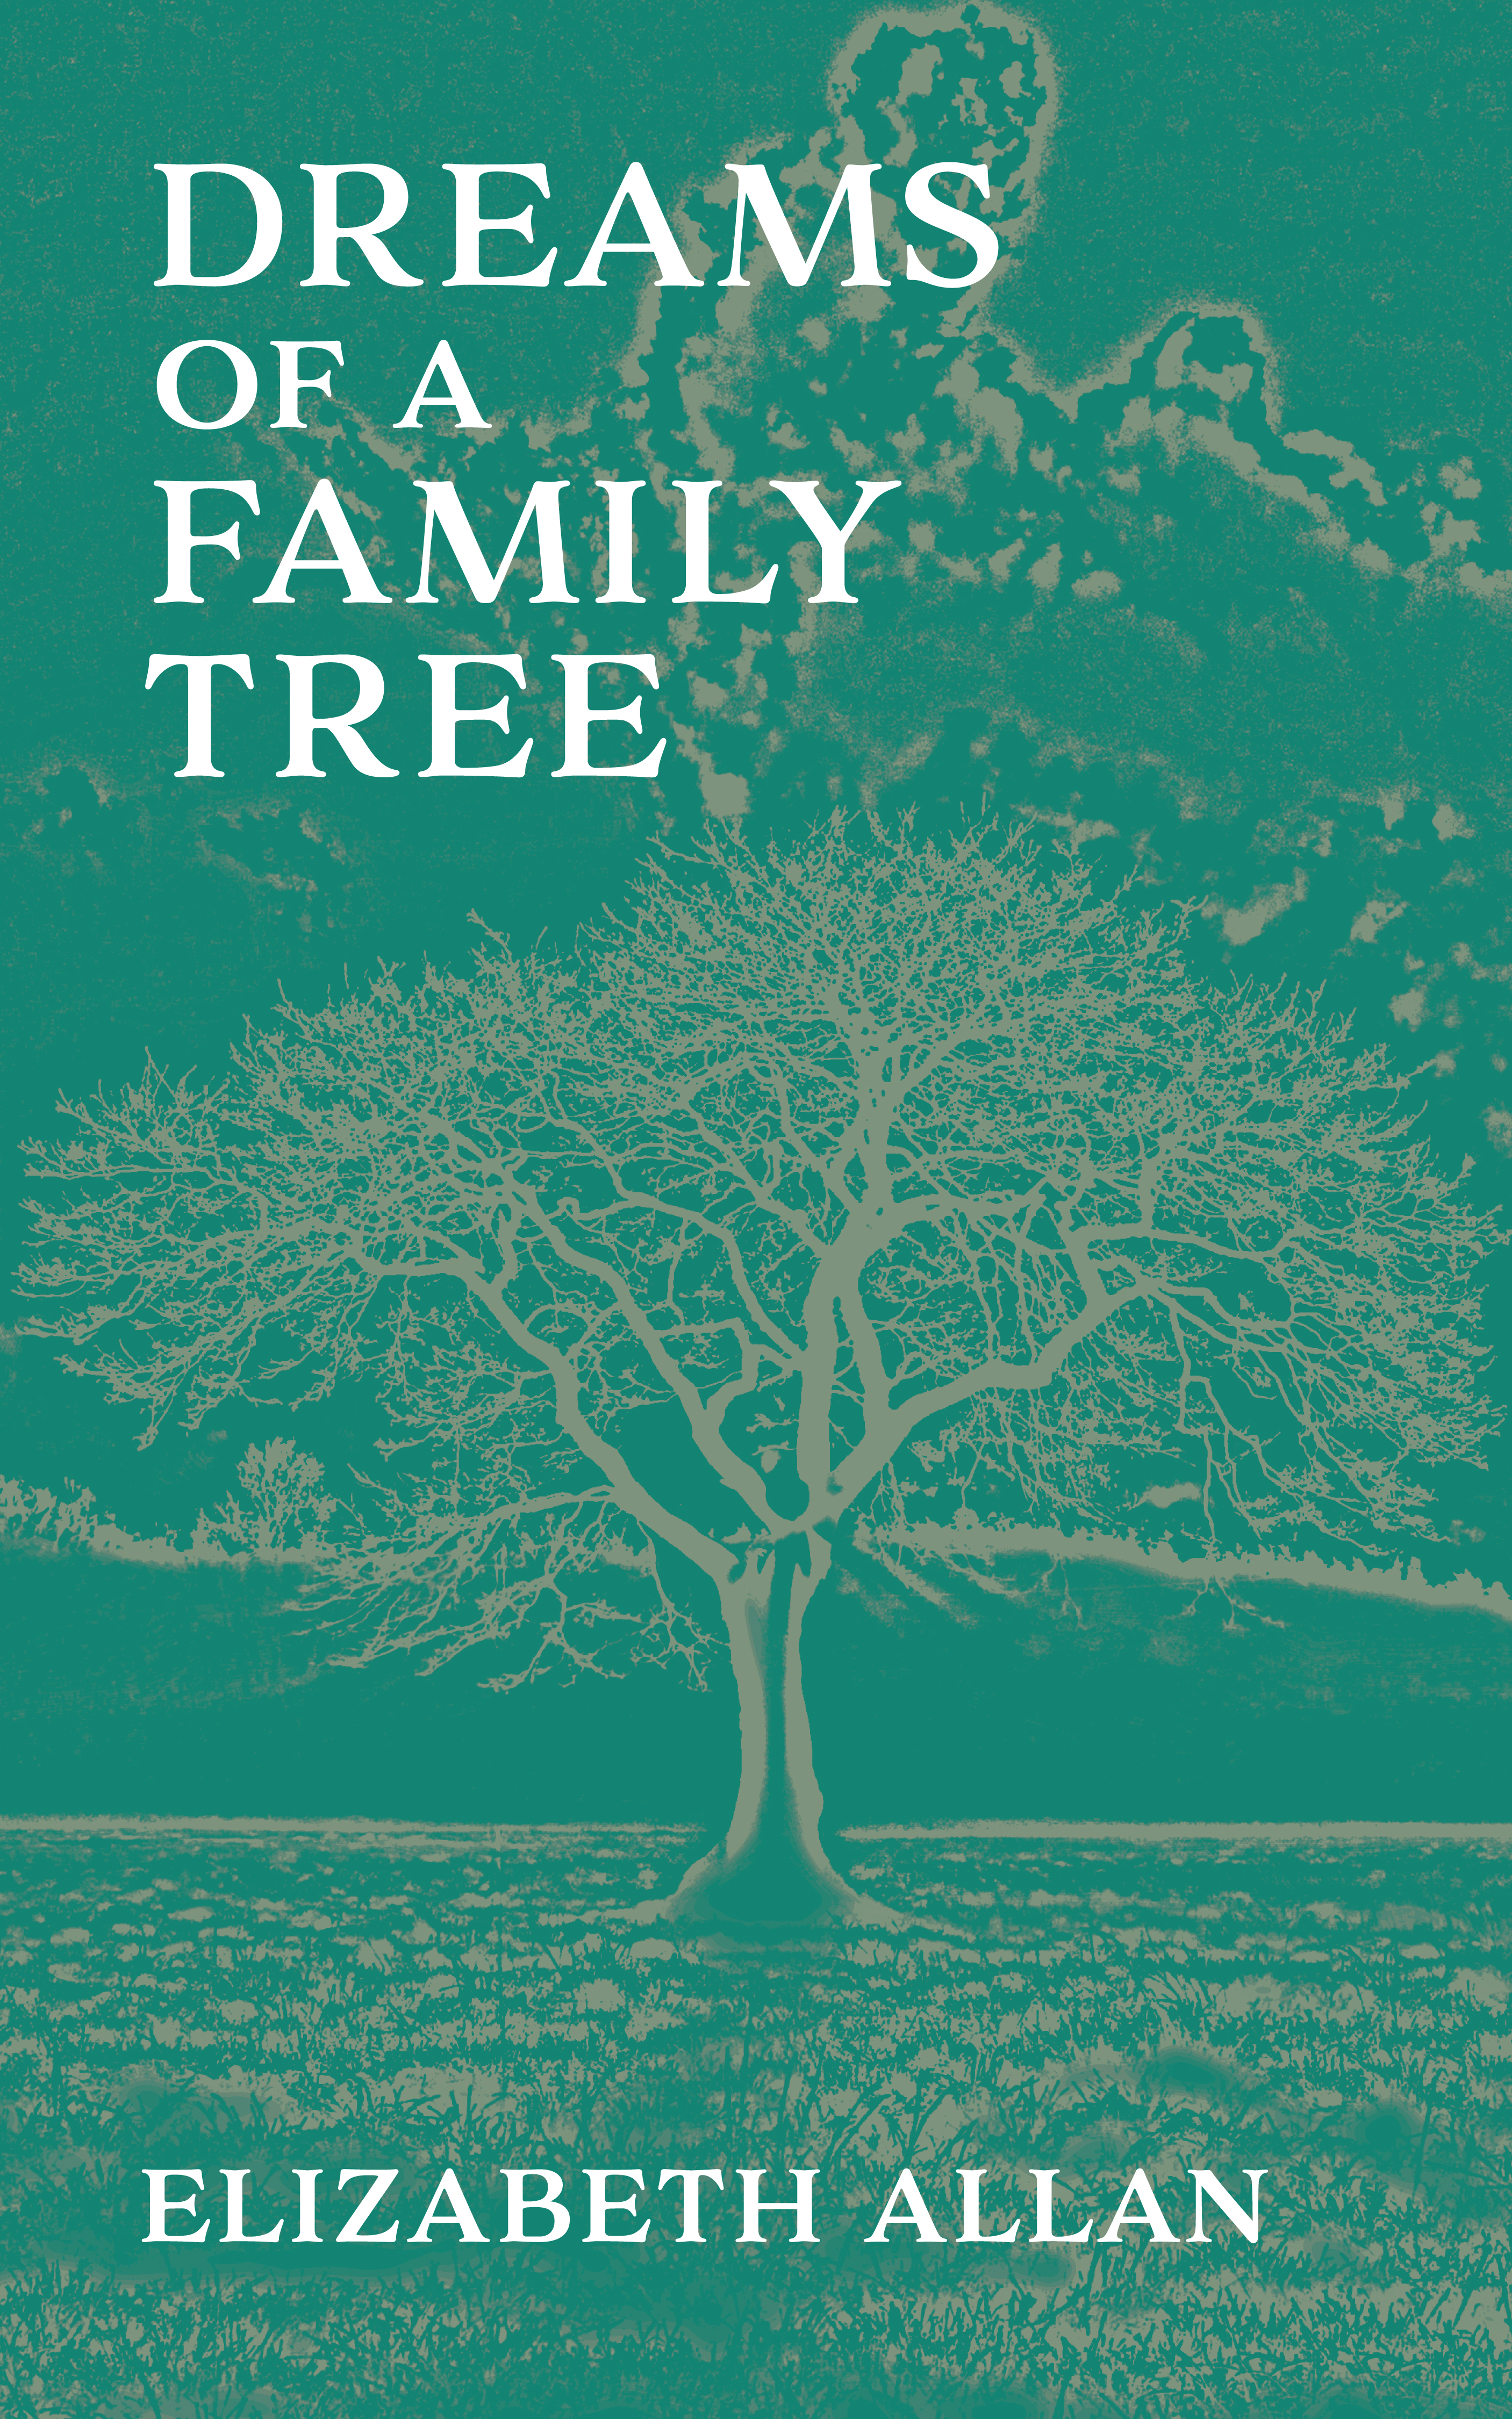 Dreams of a Family Tree by Elizabeth Allan